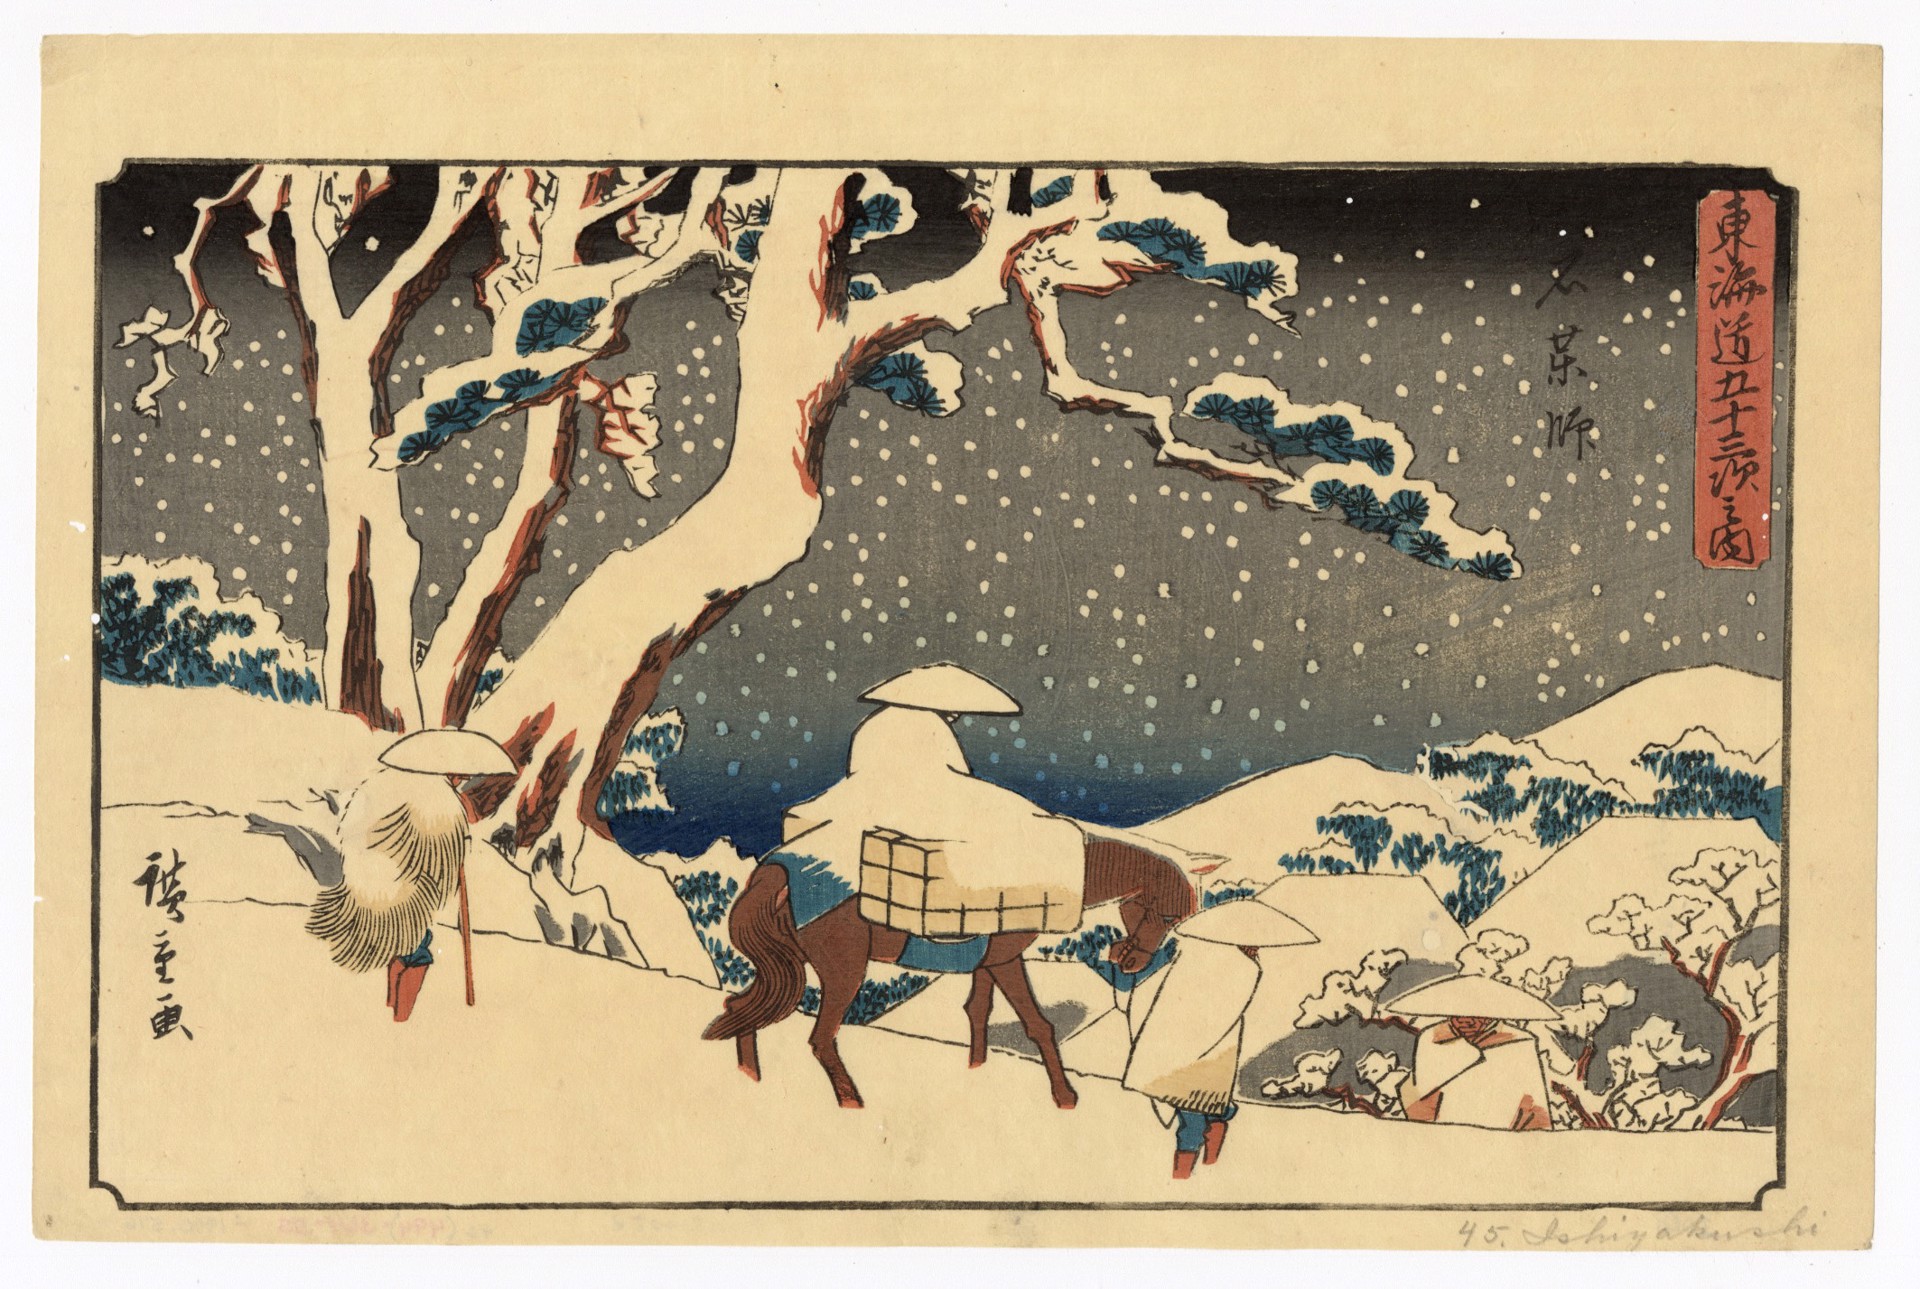 Ishiyakushi by Hiroshige